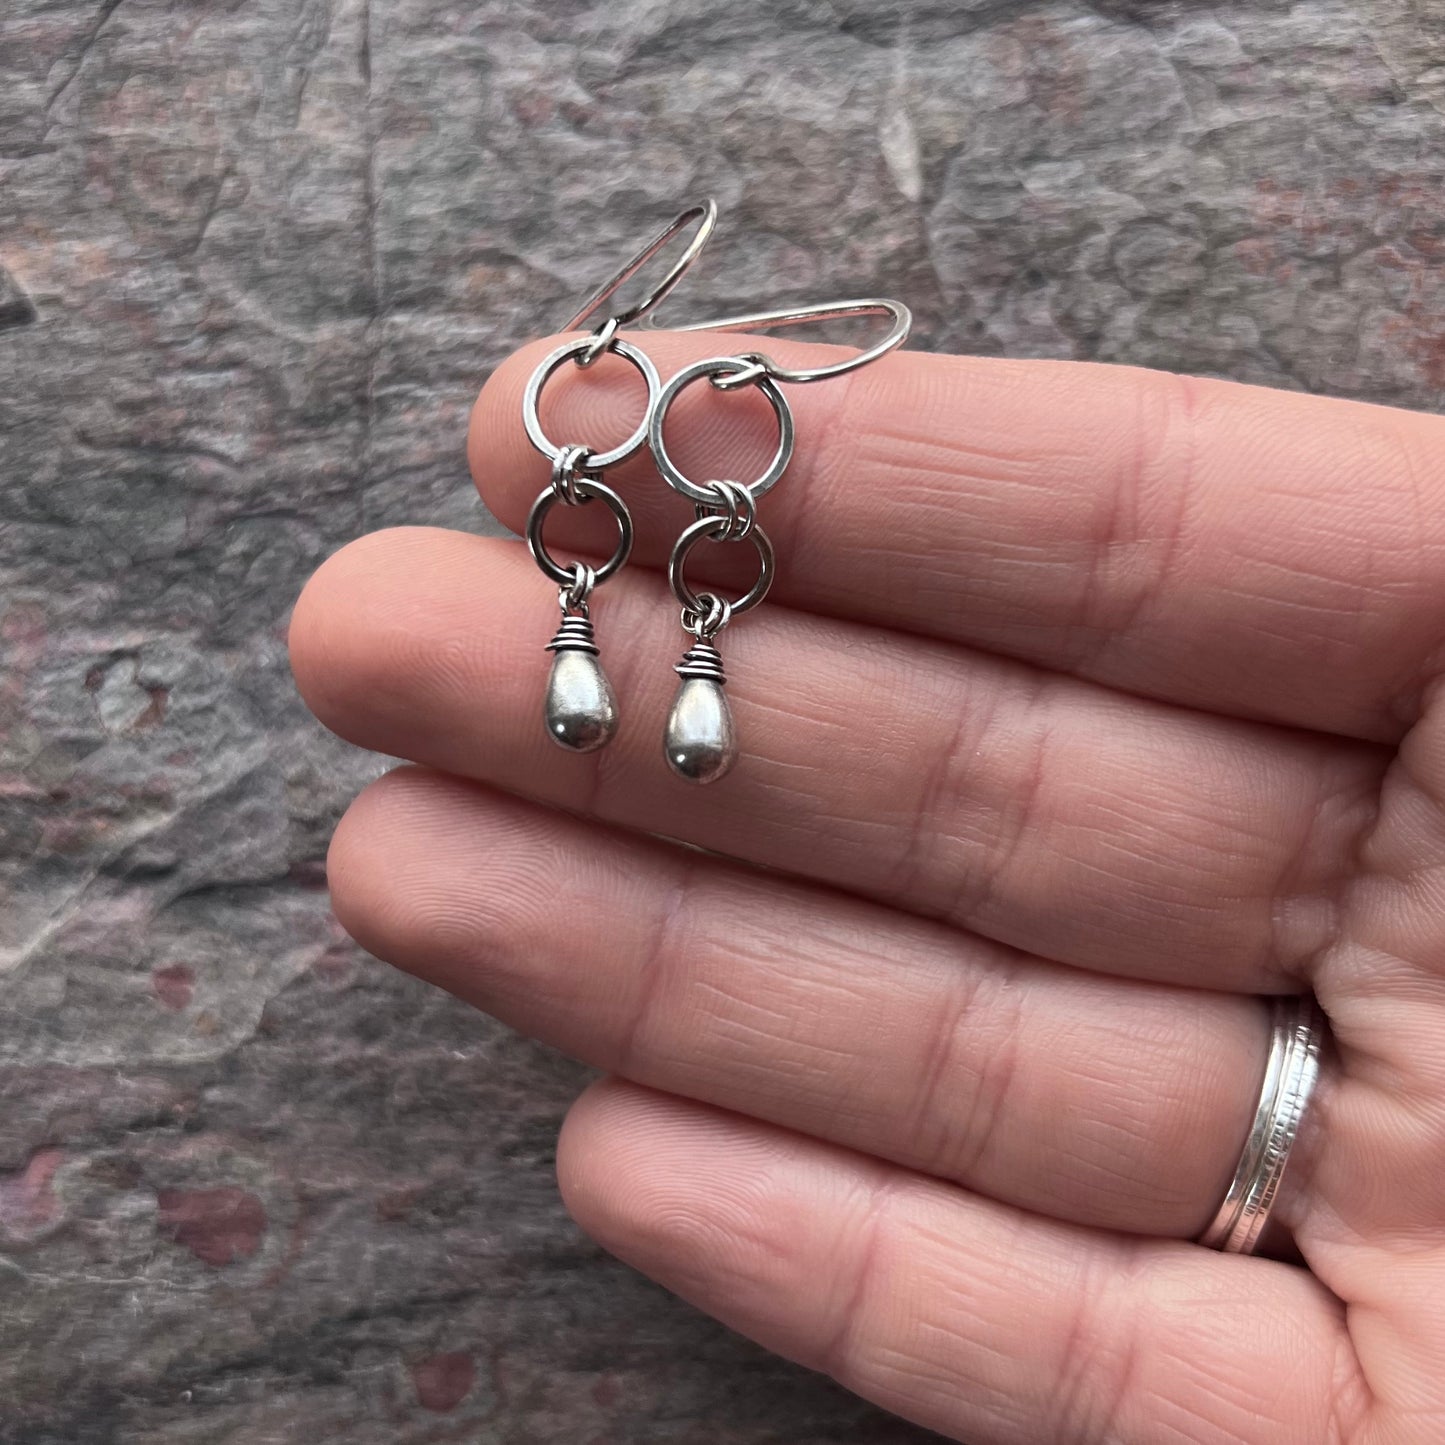 Sterling Silver Teardrop Earrings - Modern and Lightweight Everyday Earrings